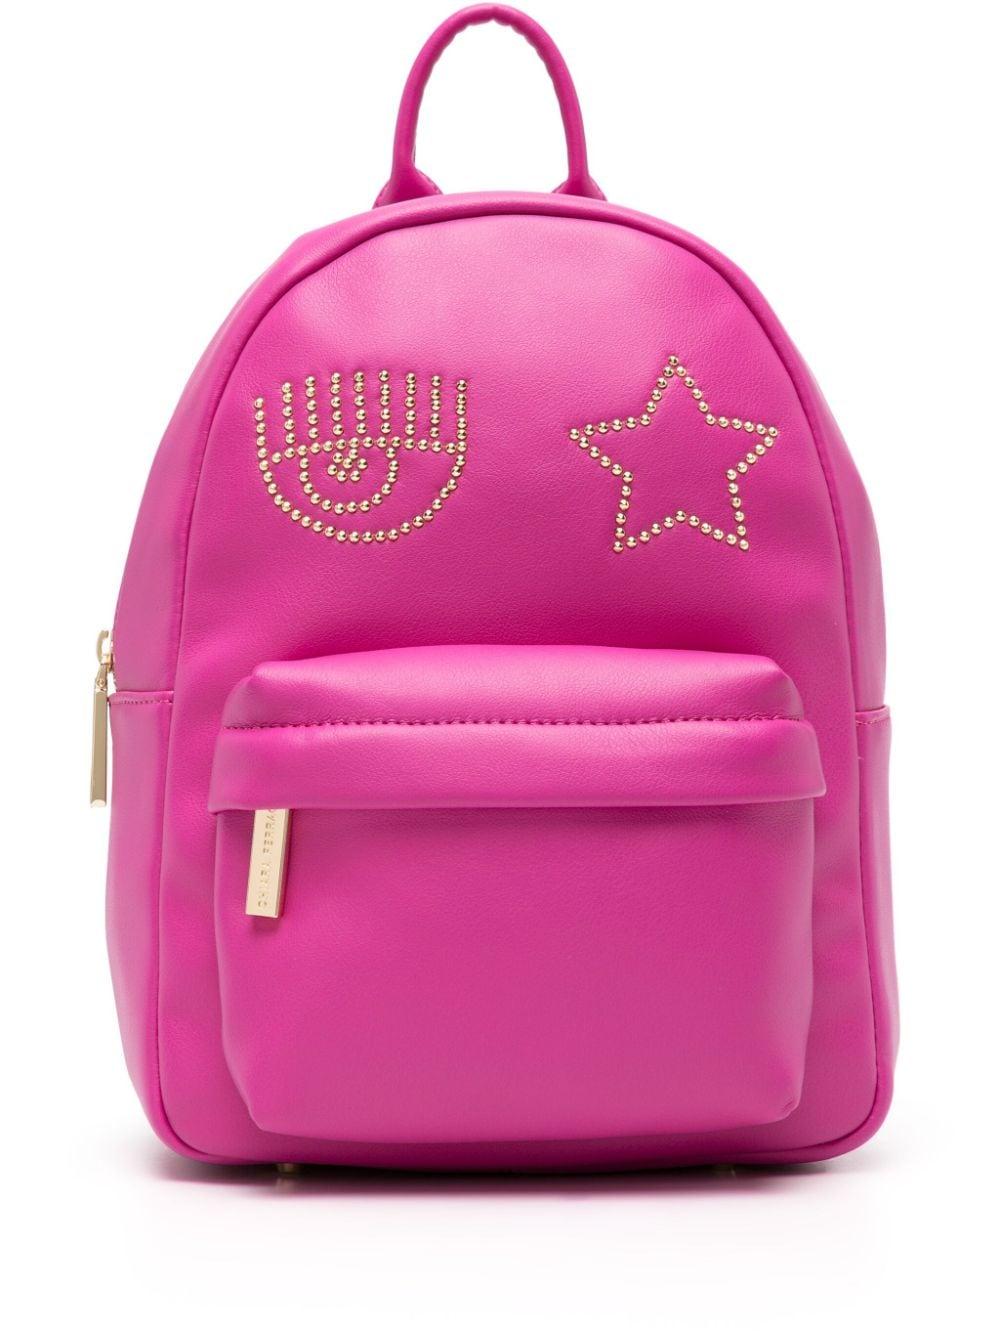 Backpack KATE - light pink - lubive.com